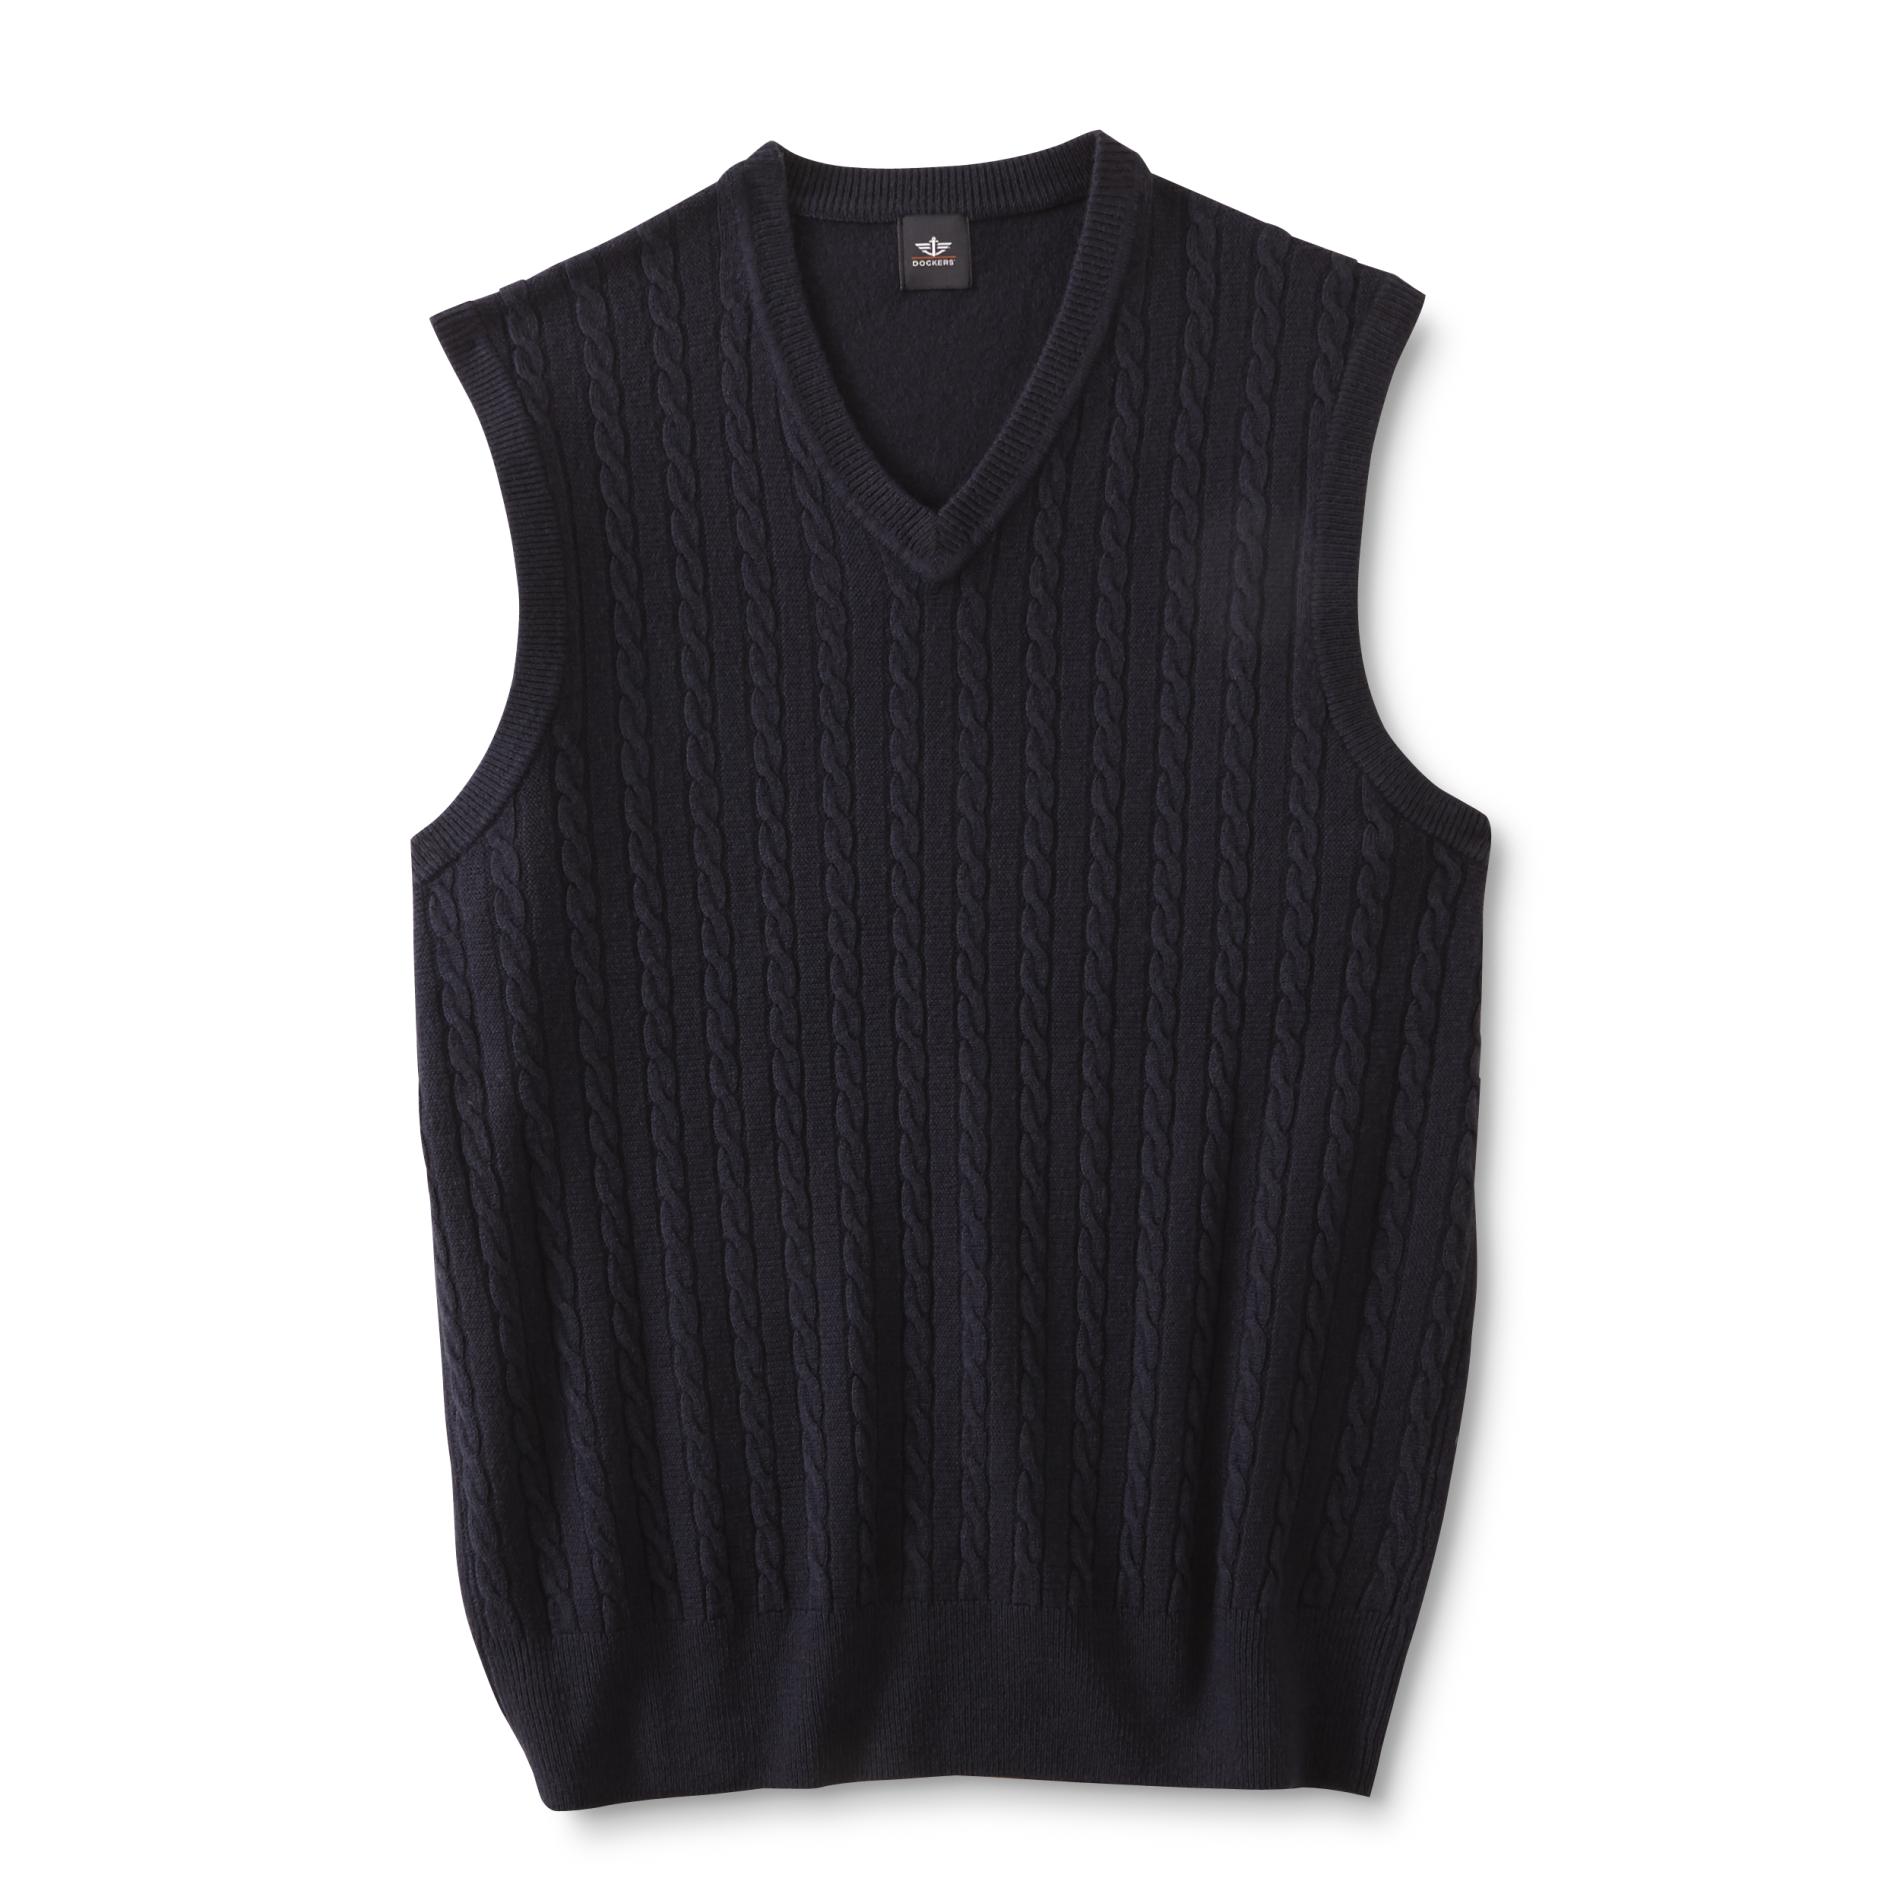 Dockers Men's Cable Knit Sweater Vest